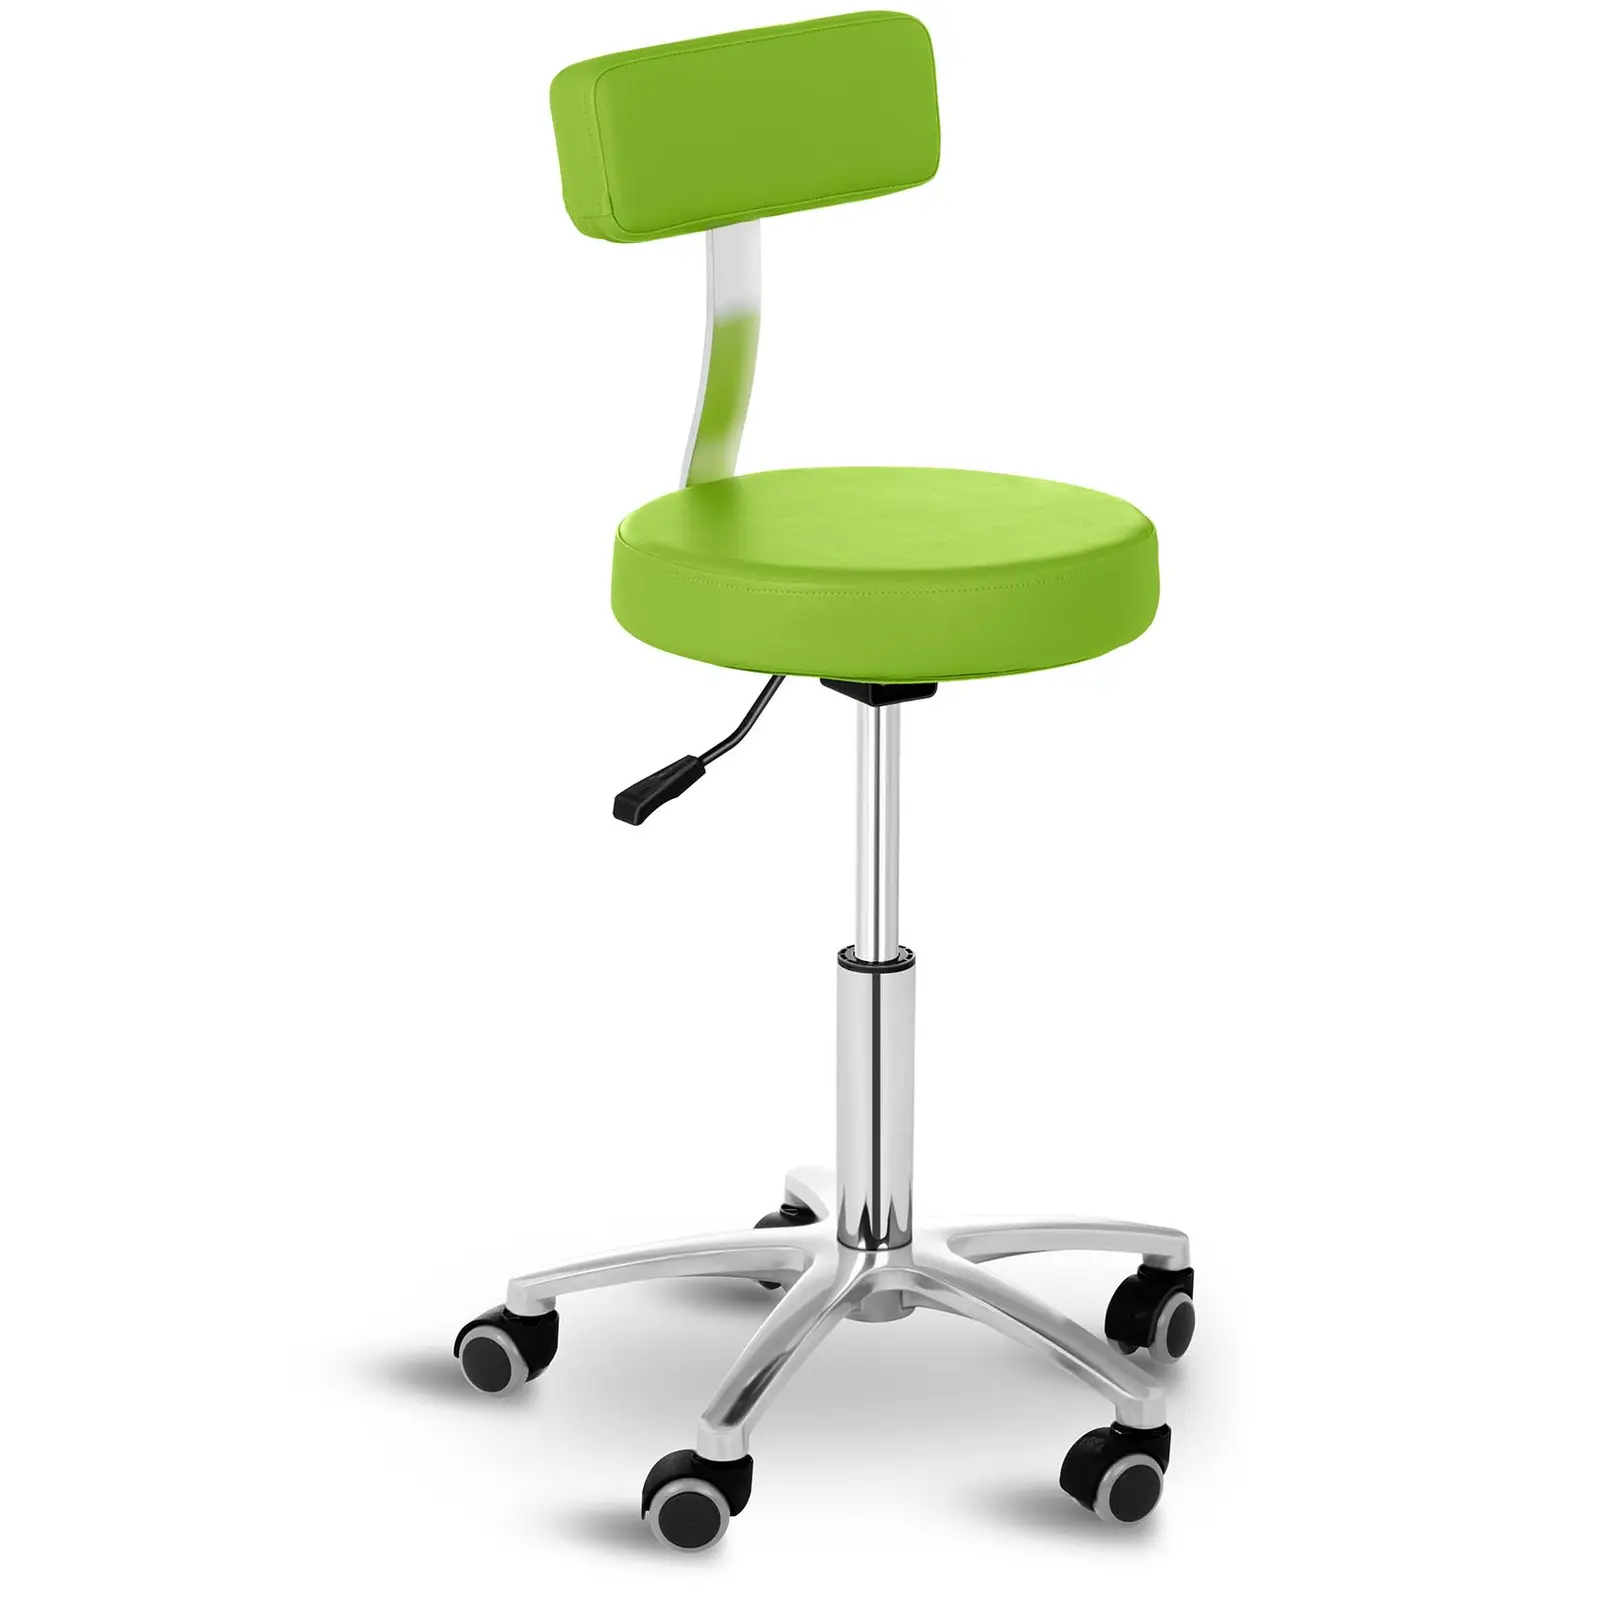 Arbetsstol frisör - 445- 580 mm - 150 kg - Grön